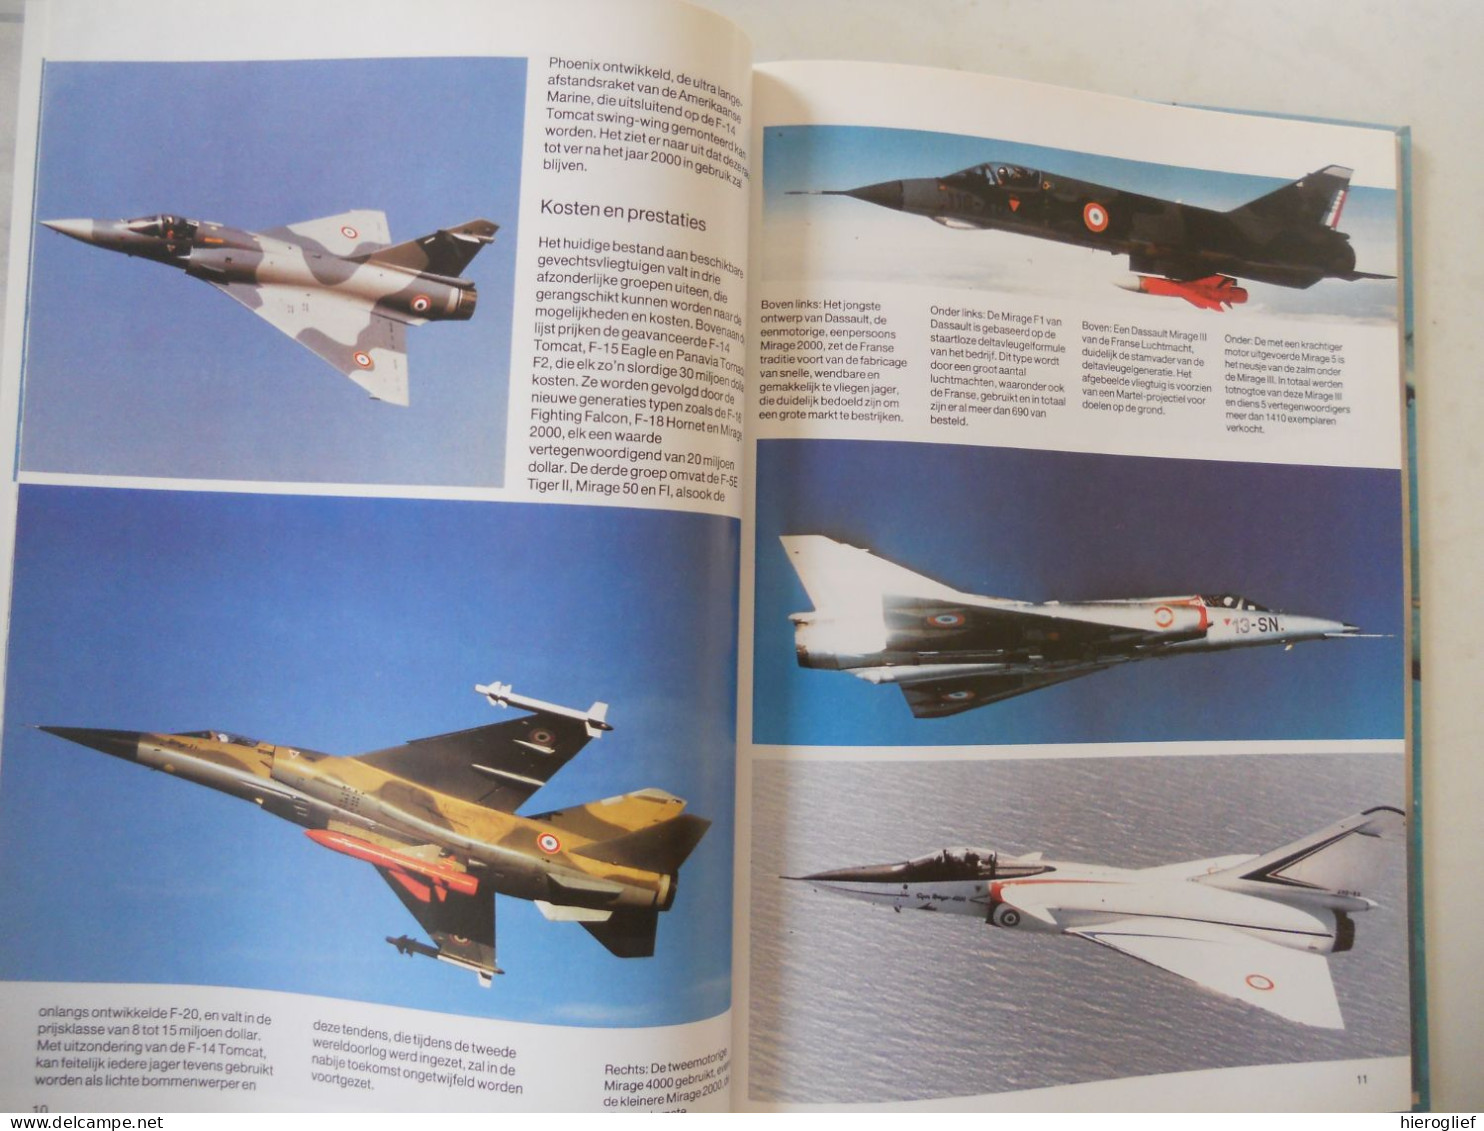 GEVECHTSVLIEGTUIGEN Door Hugh W. Cowin / Oorlog Vliegtuigen Luchtmacht Types Modellen Afweer Bommenwerpers - Histoire